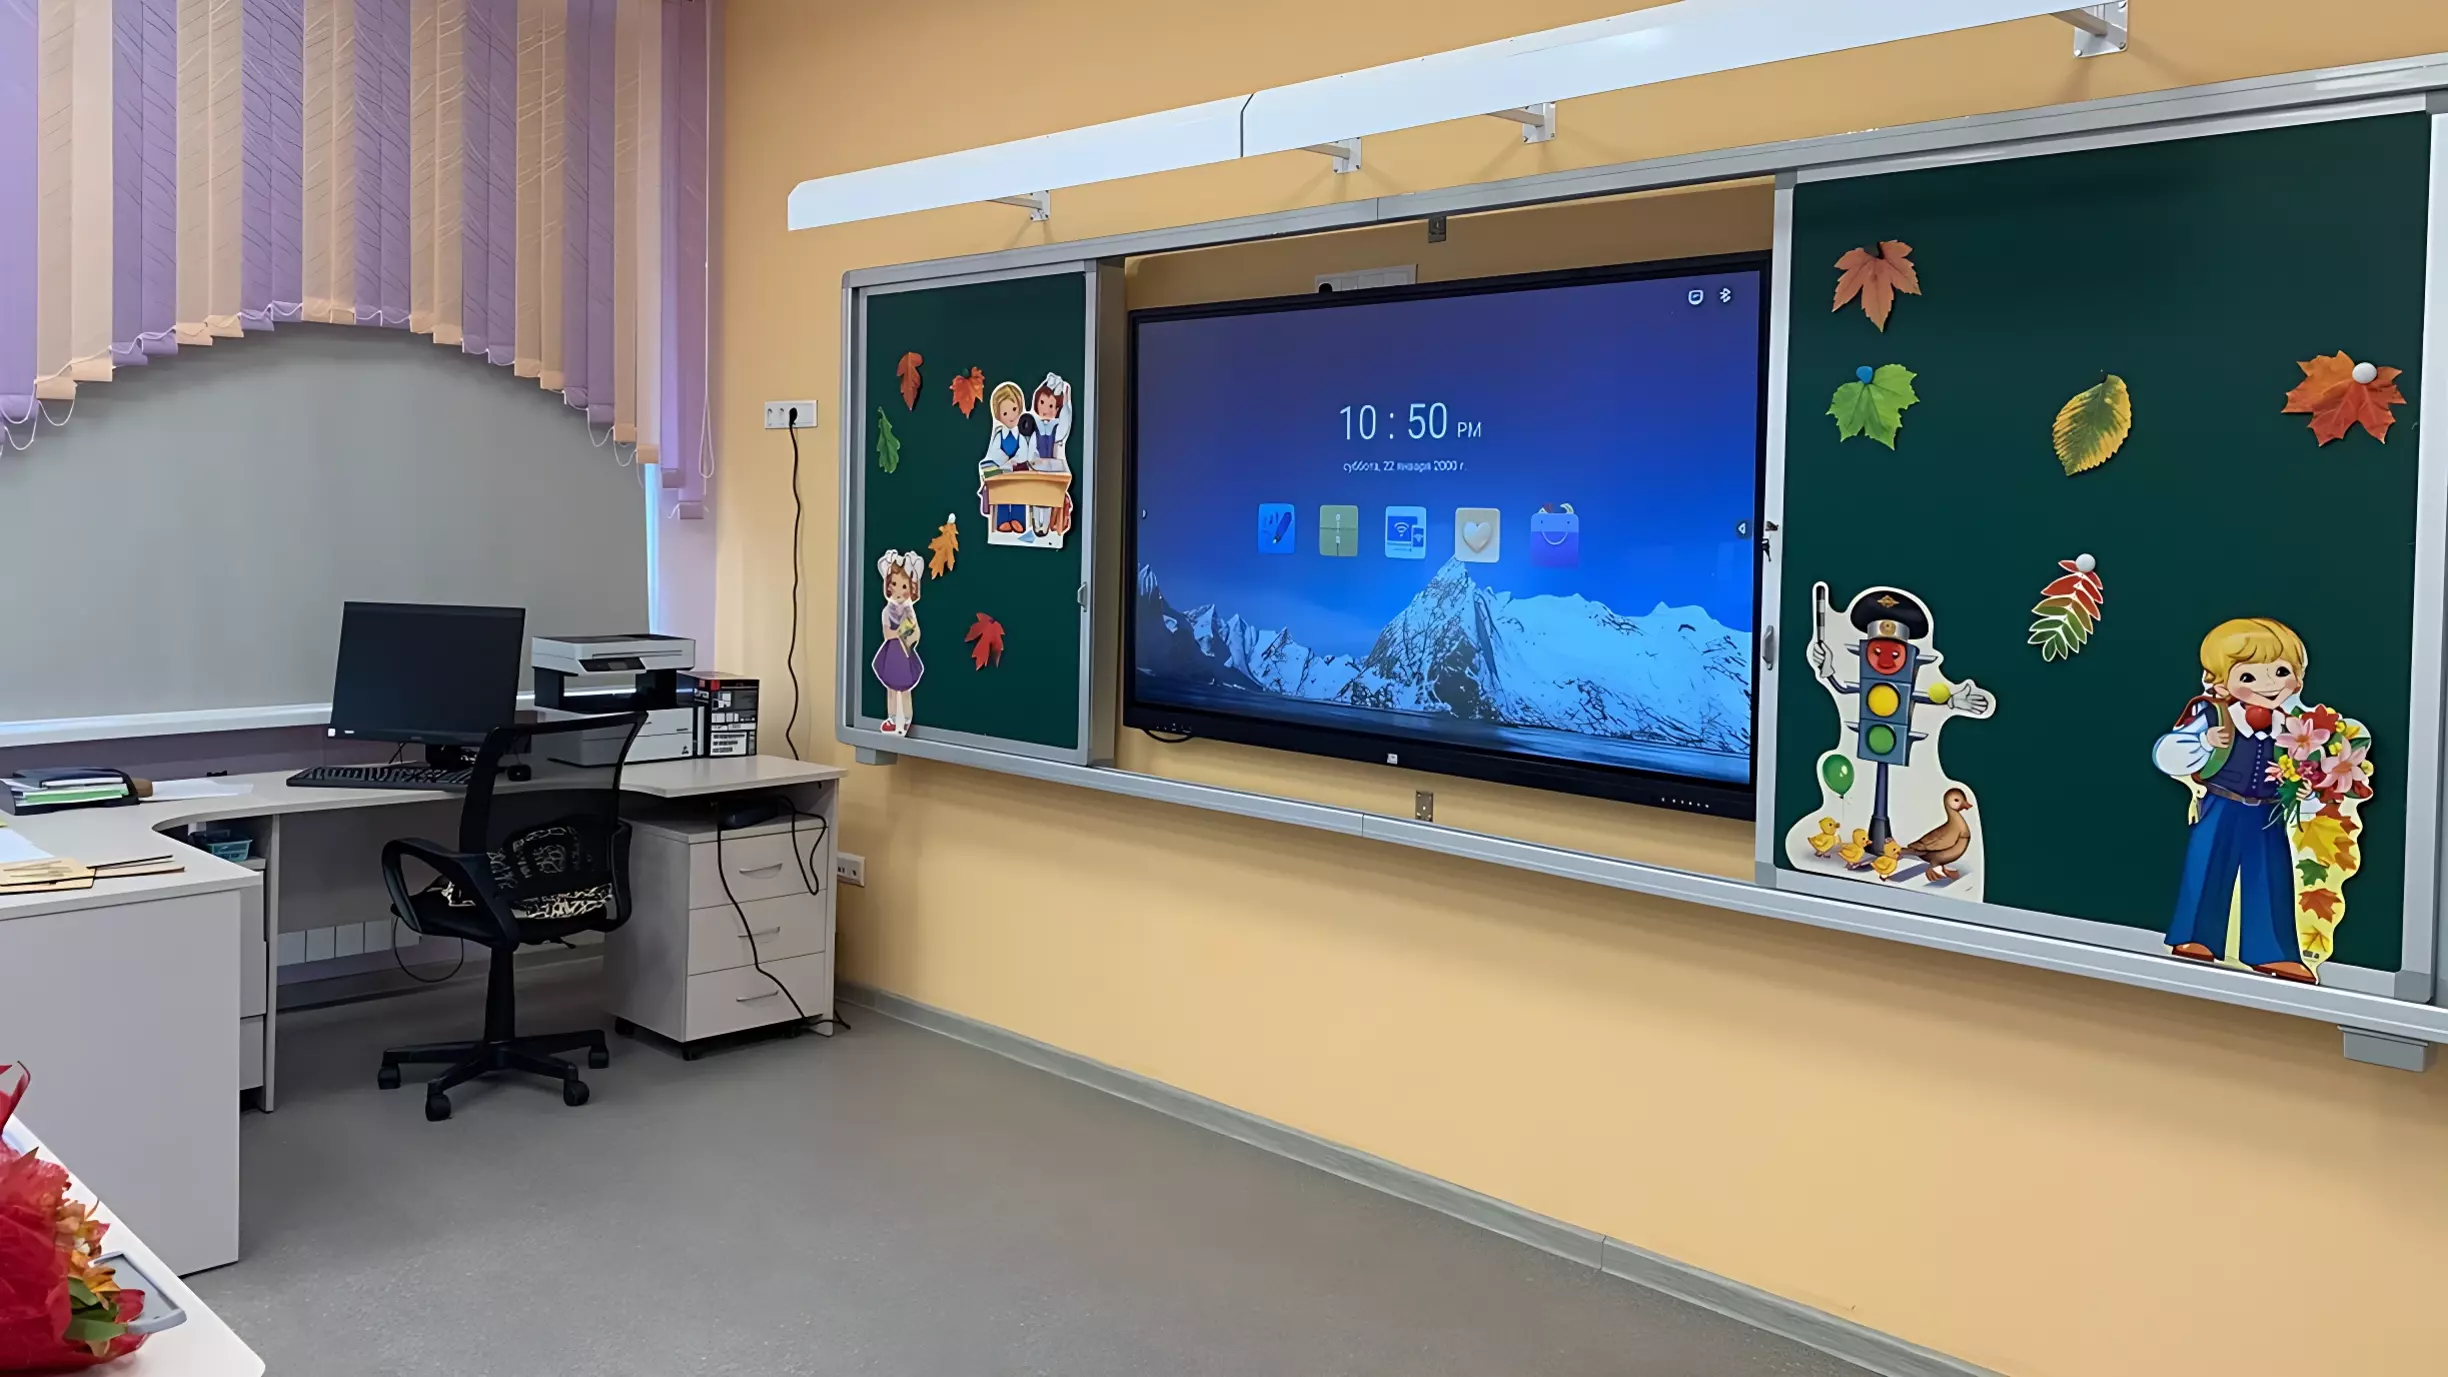 Школу в микрорайоне Патрокл во Владивостоке сдадут в эксплуатацию вовремя